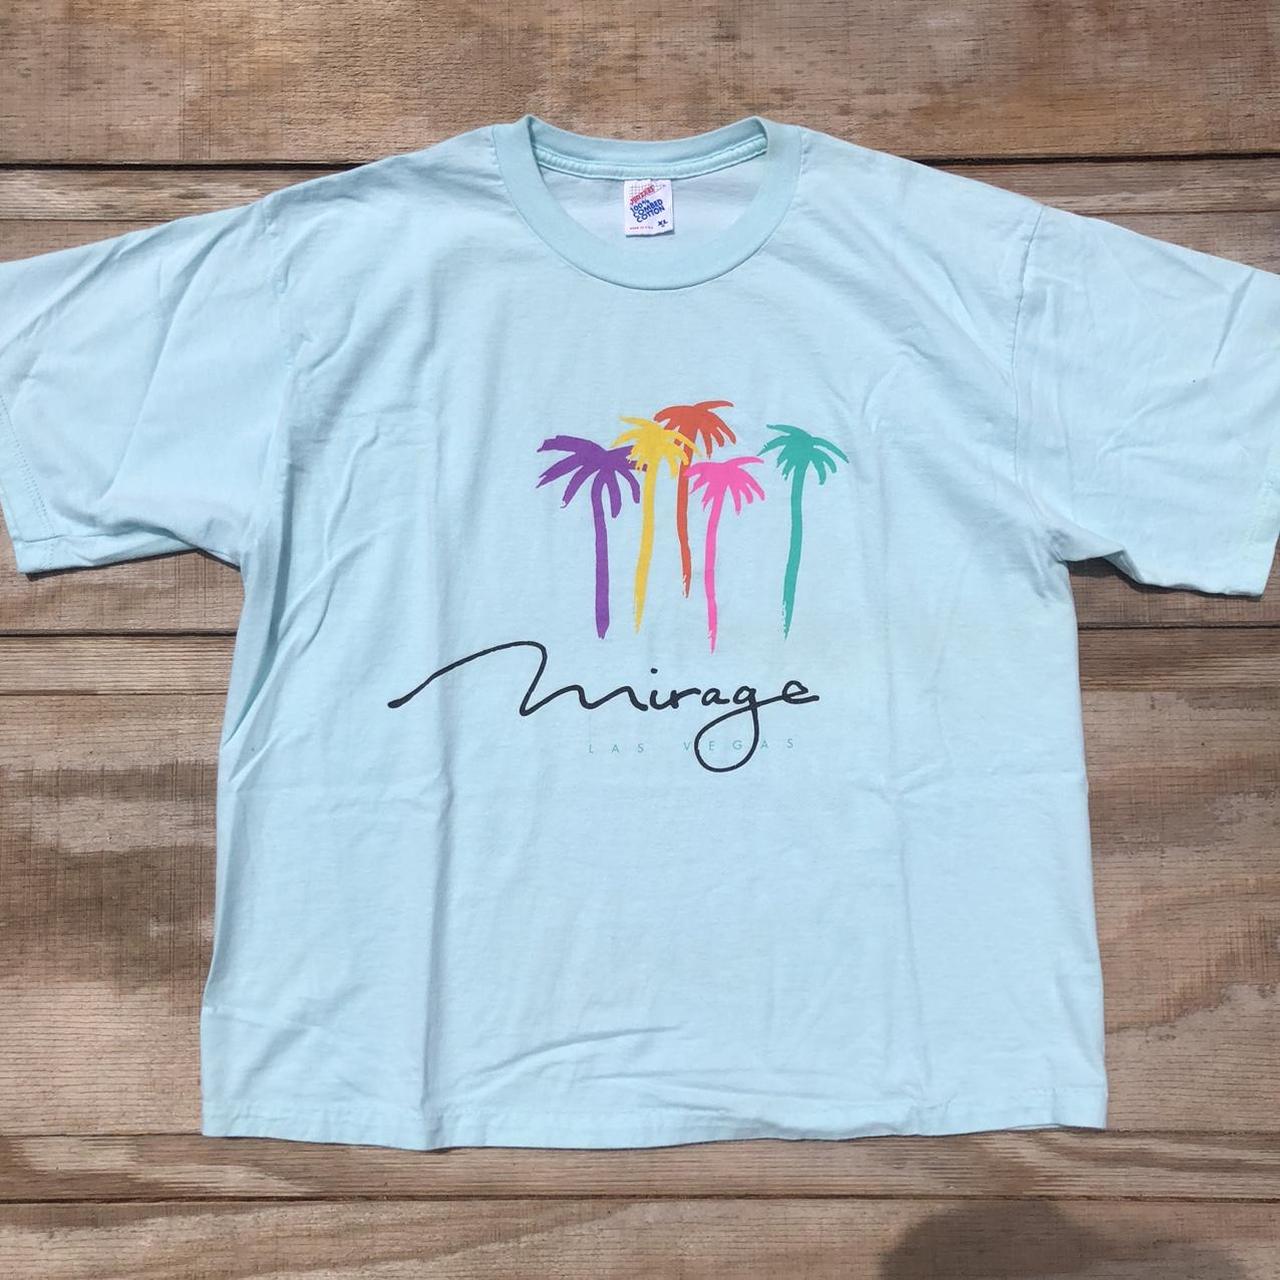 Vintage Mirage Las Vegas t-shirt palm tree resort...